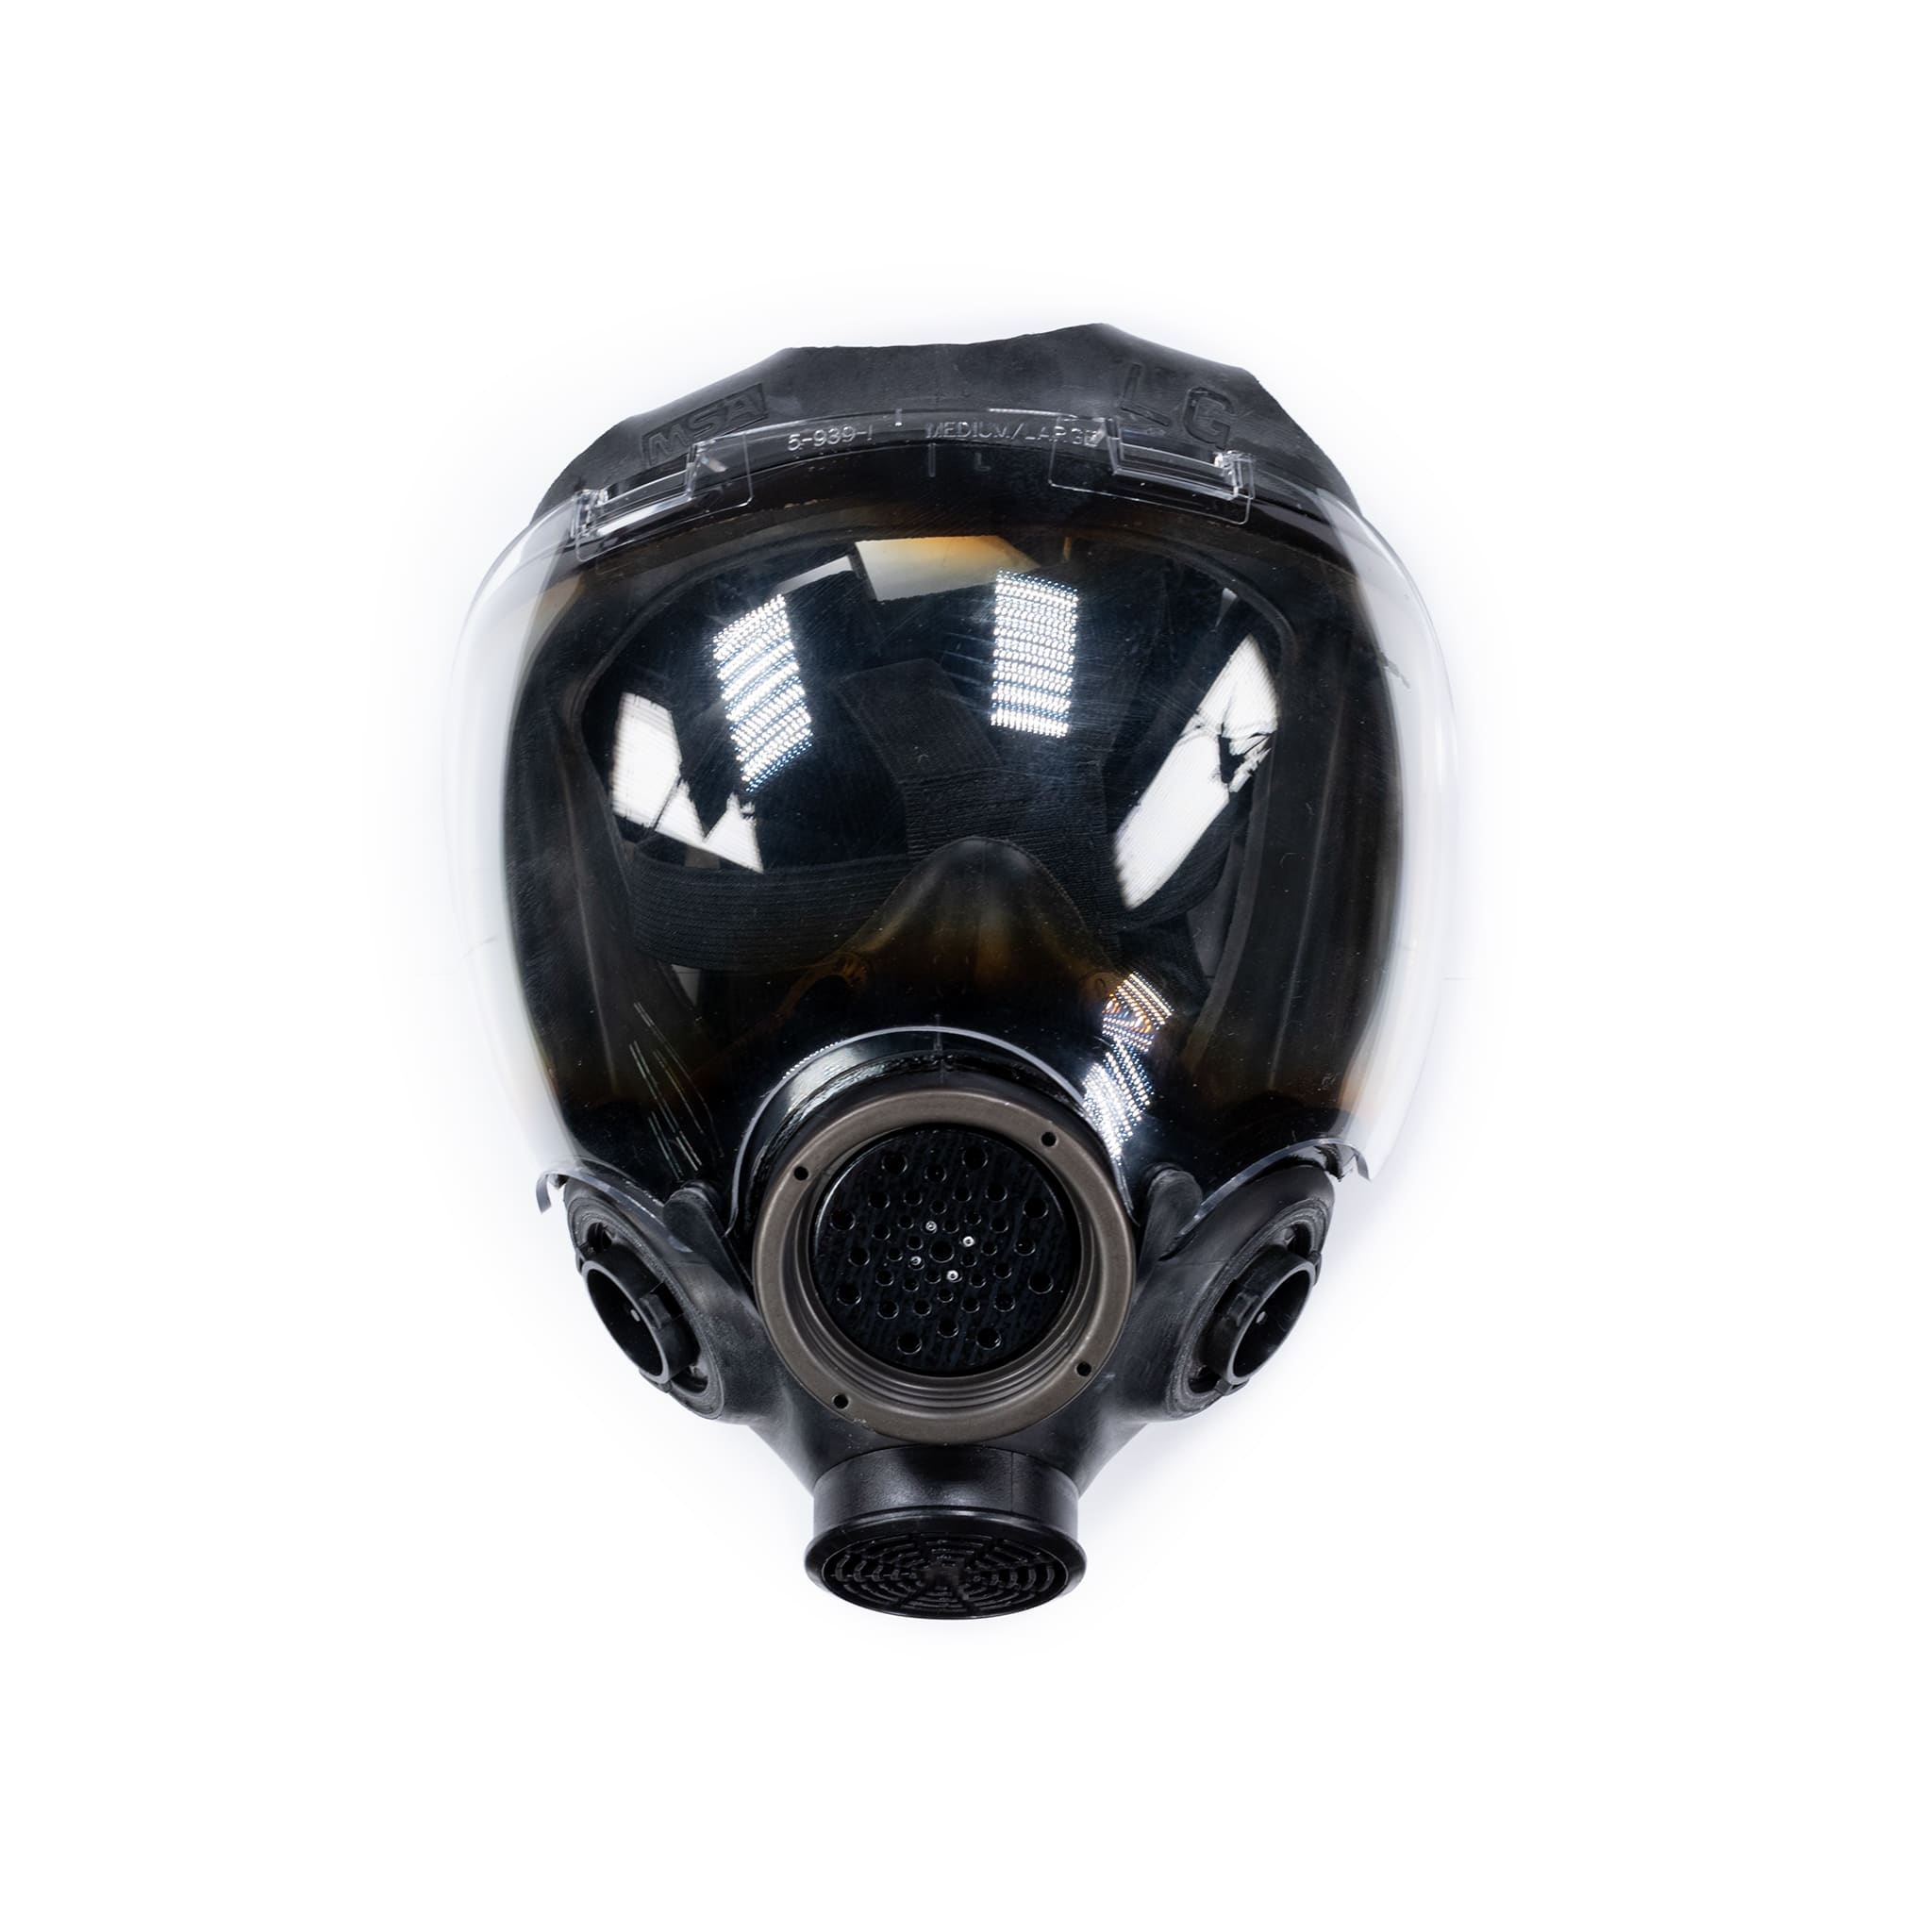 実物■MSA ADVANTAGE 1000 Gas Mask■Mサイズガスマスク